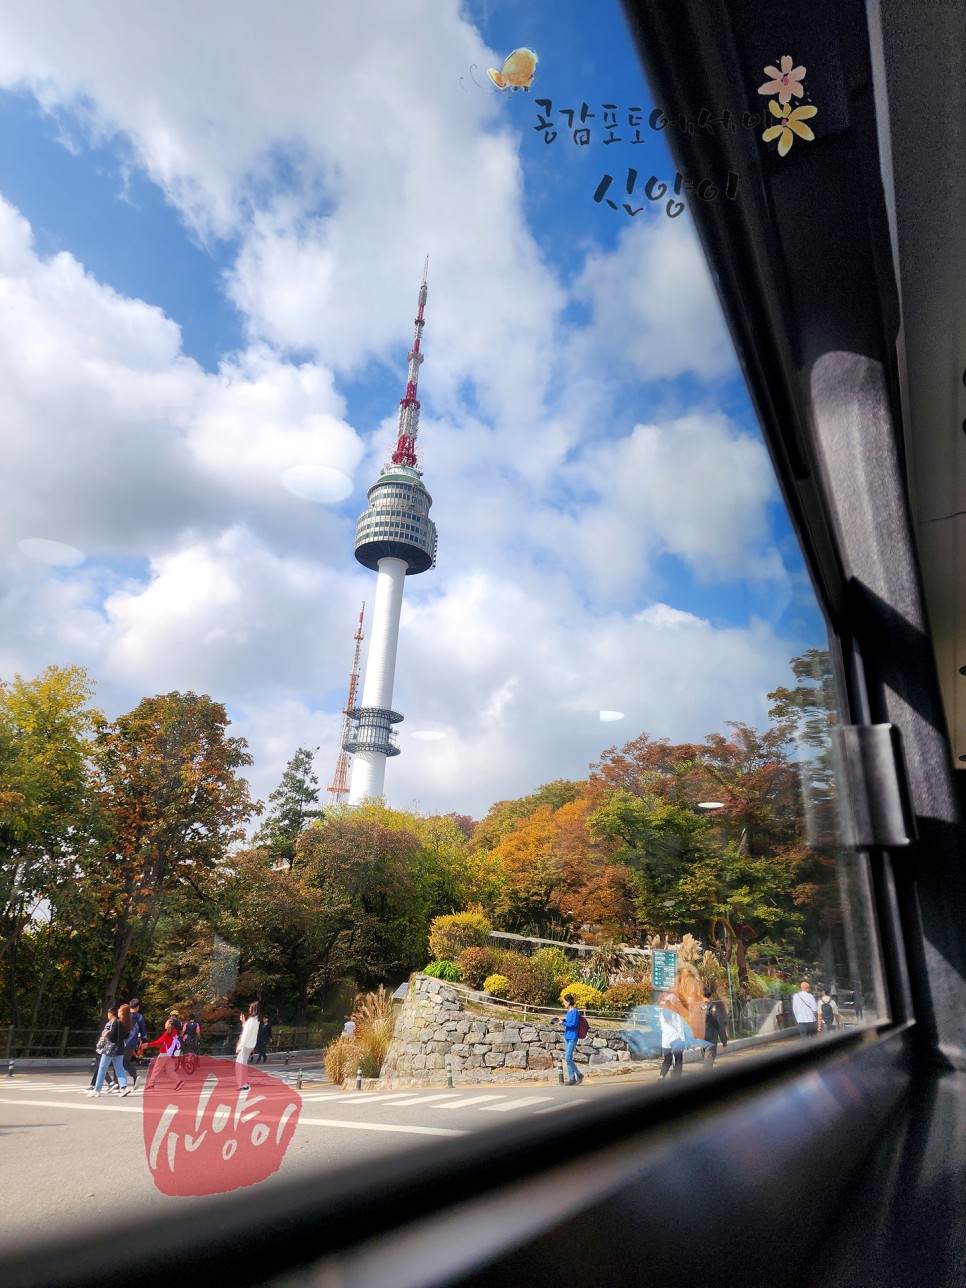 남산 서울타워 가는법 남산순환버스 01 타세요.